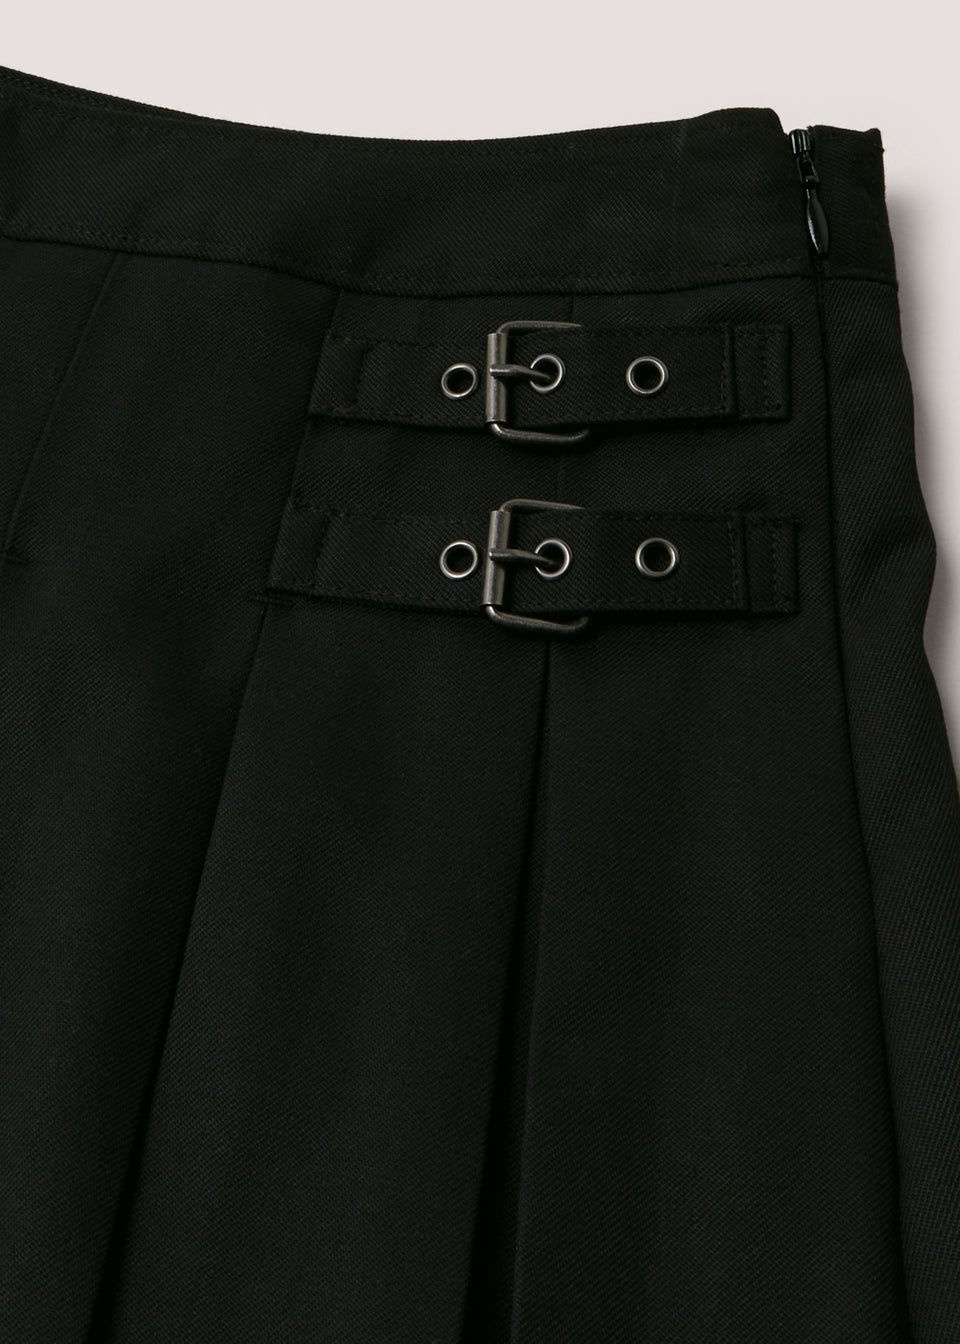 Girls Black Kilt School Skirt (8-16yrs)